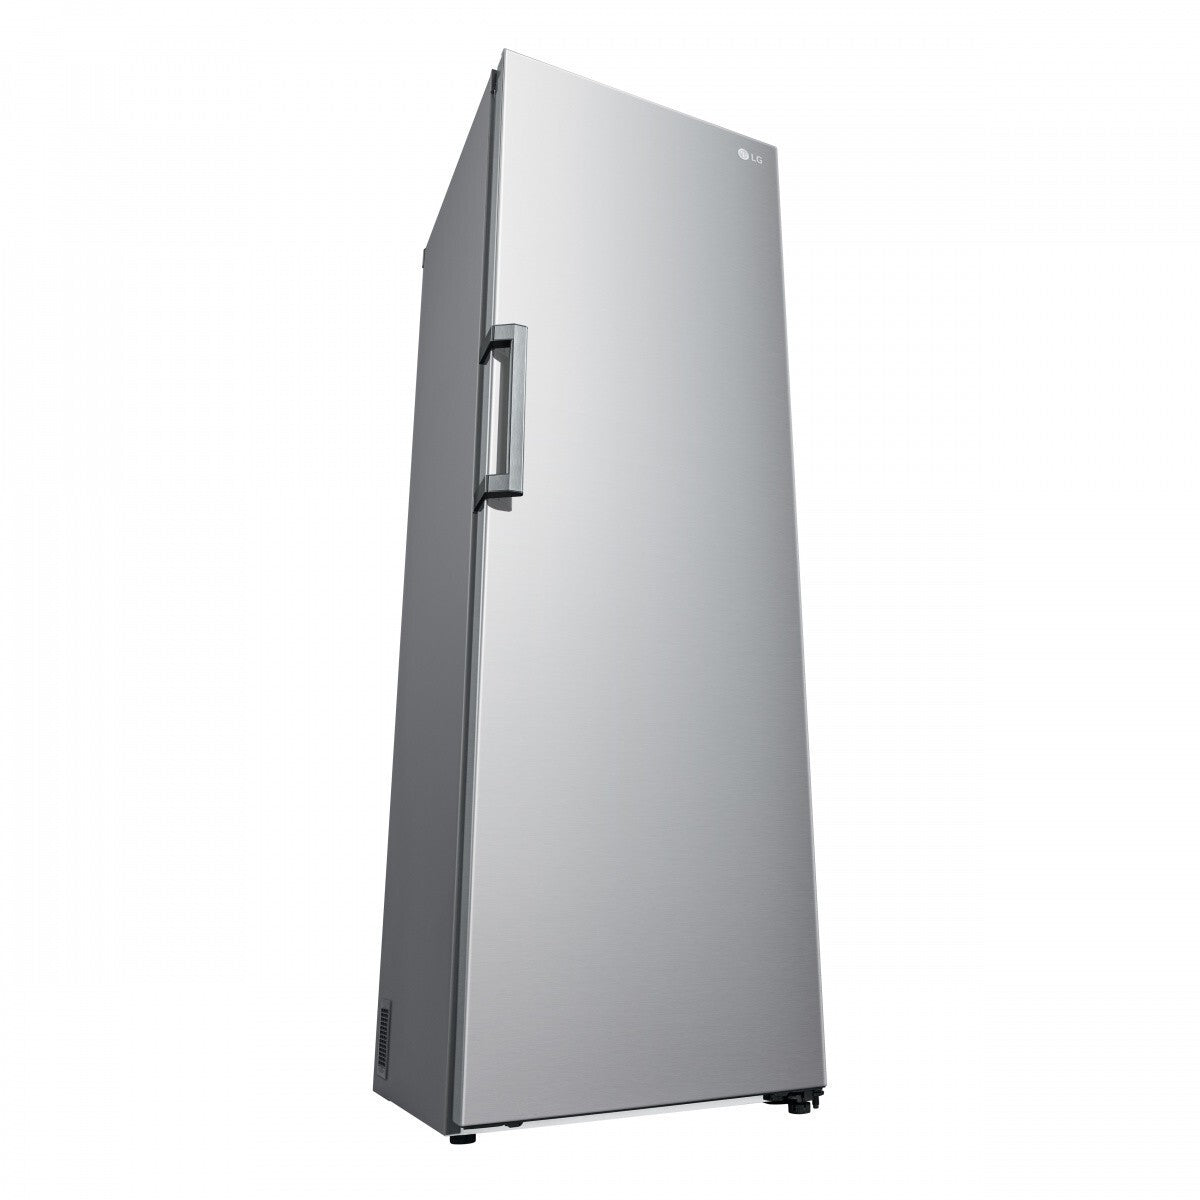 Jednodveřová lednice LG GLT51PZGSZ